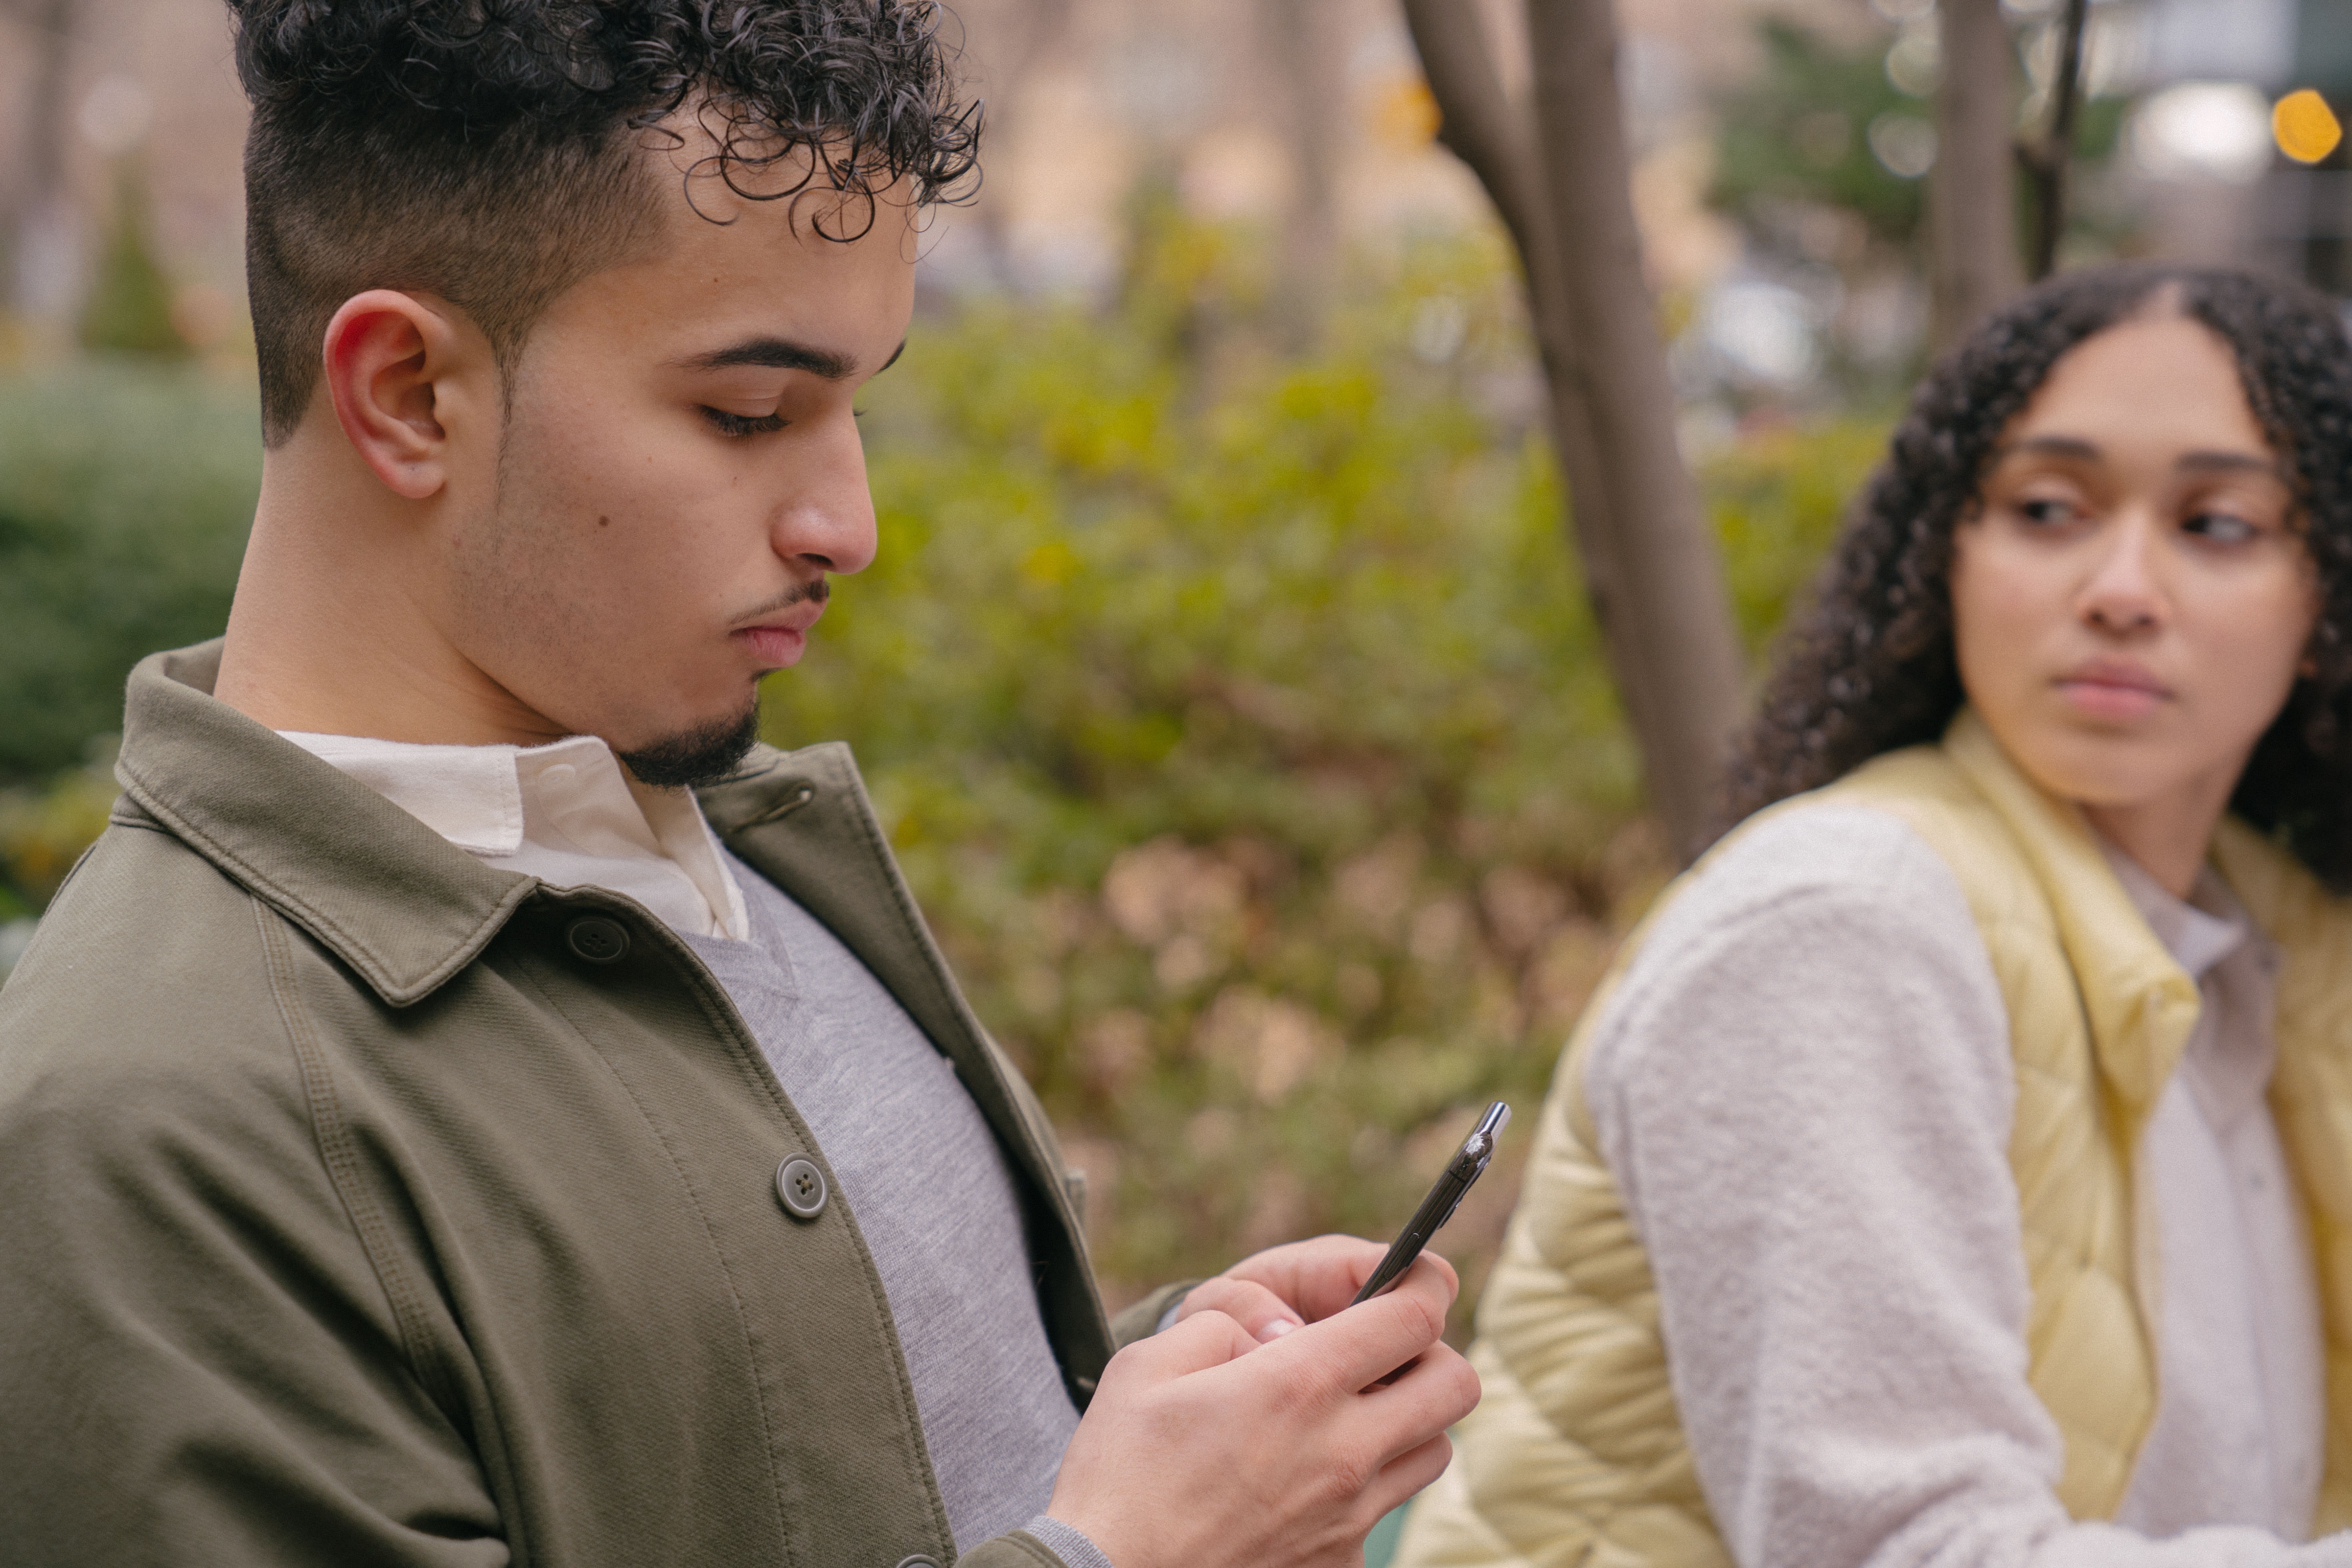 La imagen muestra a una pareja: un chico mirando el móvil y una chica, que parece enfadada, mirando al chico.